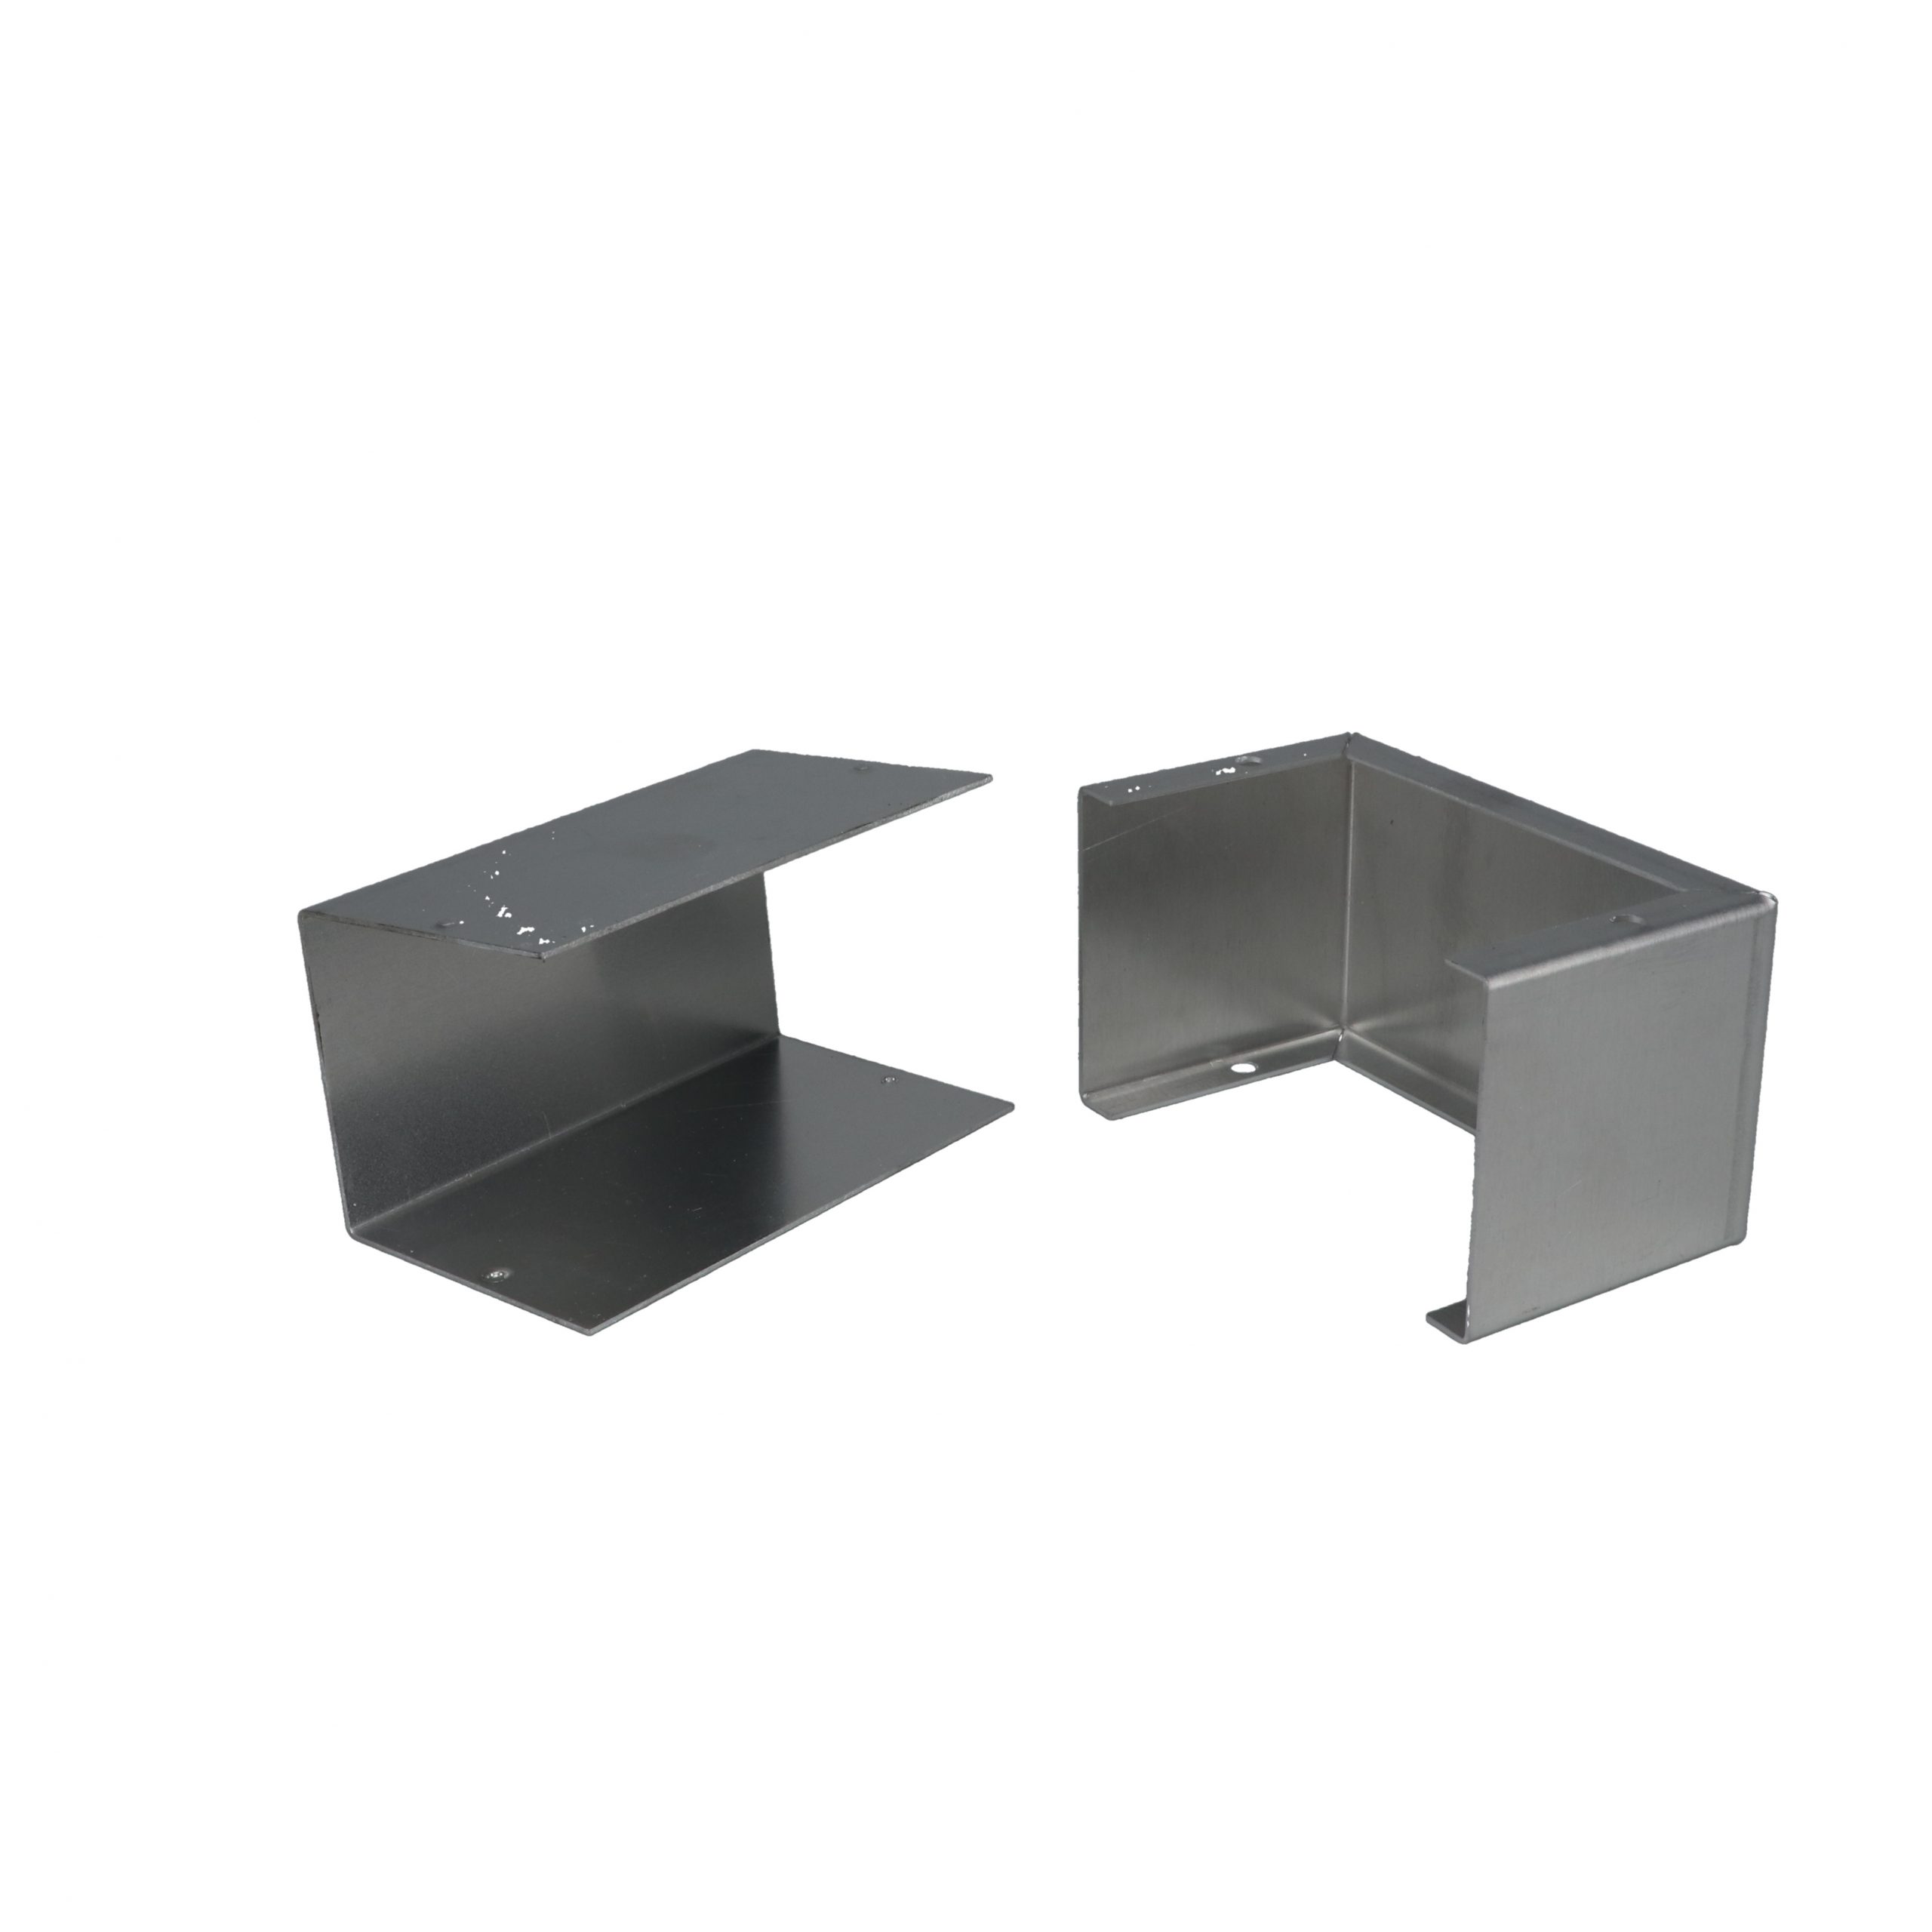 BUD Industries CU-3003-A Aluminum Electronics Minibox 4” x 2.25” x 2.25” New 